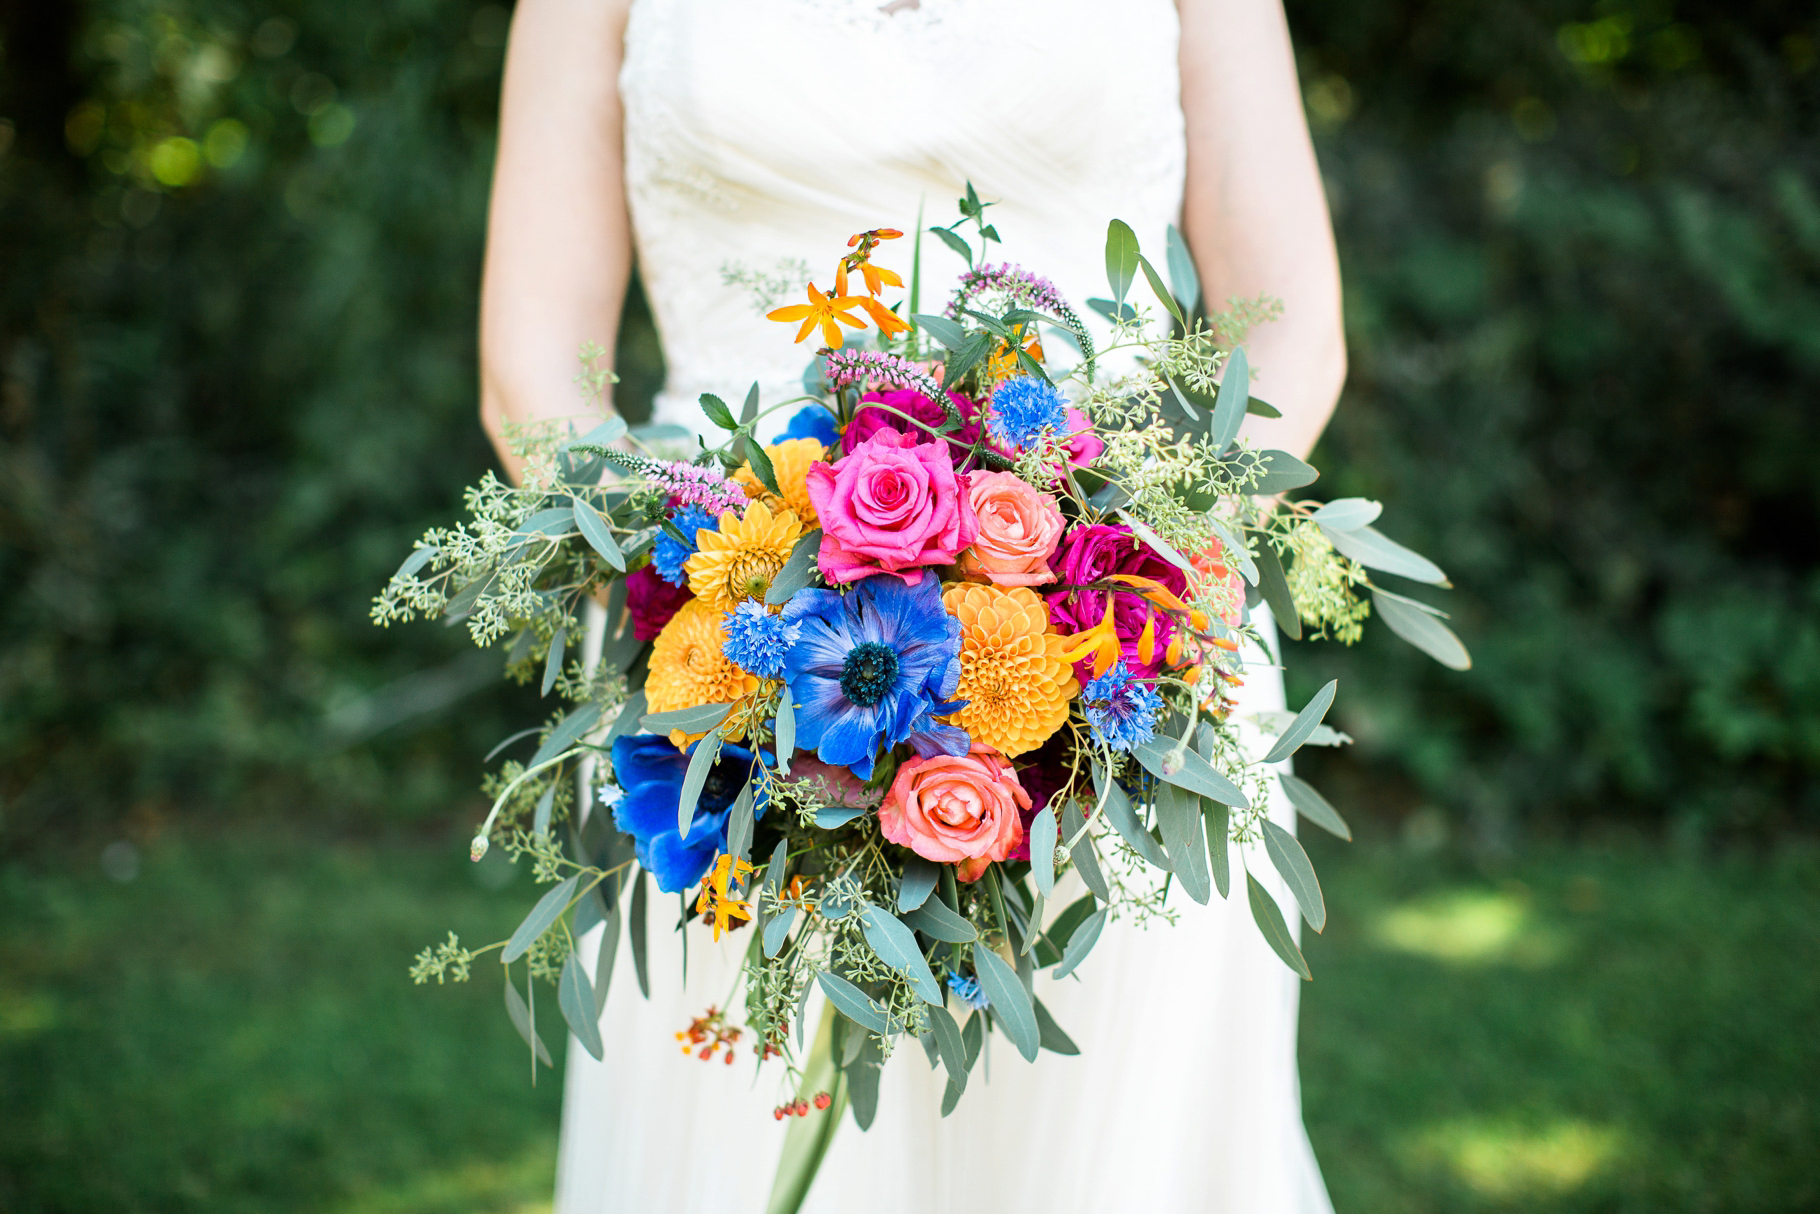 17-bridal-bouquet-flowers-bright-colors-vibrant-edmonds-seattle-wedding-photographer